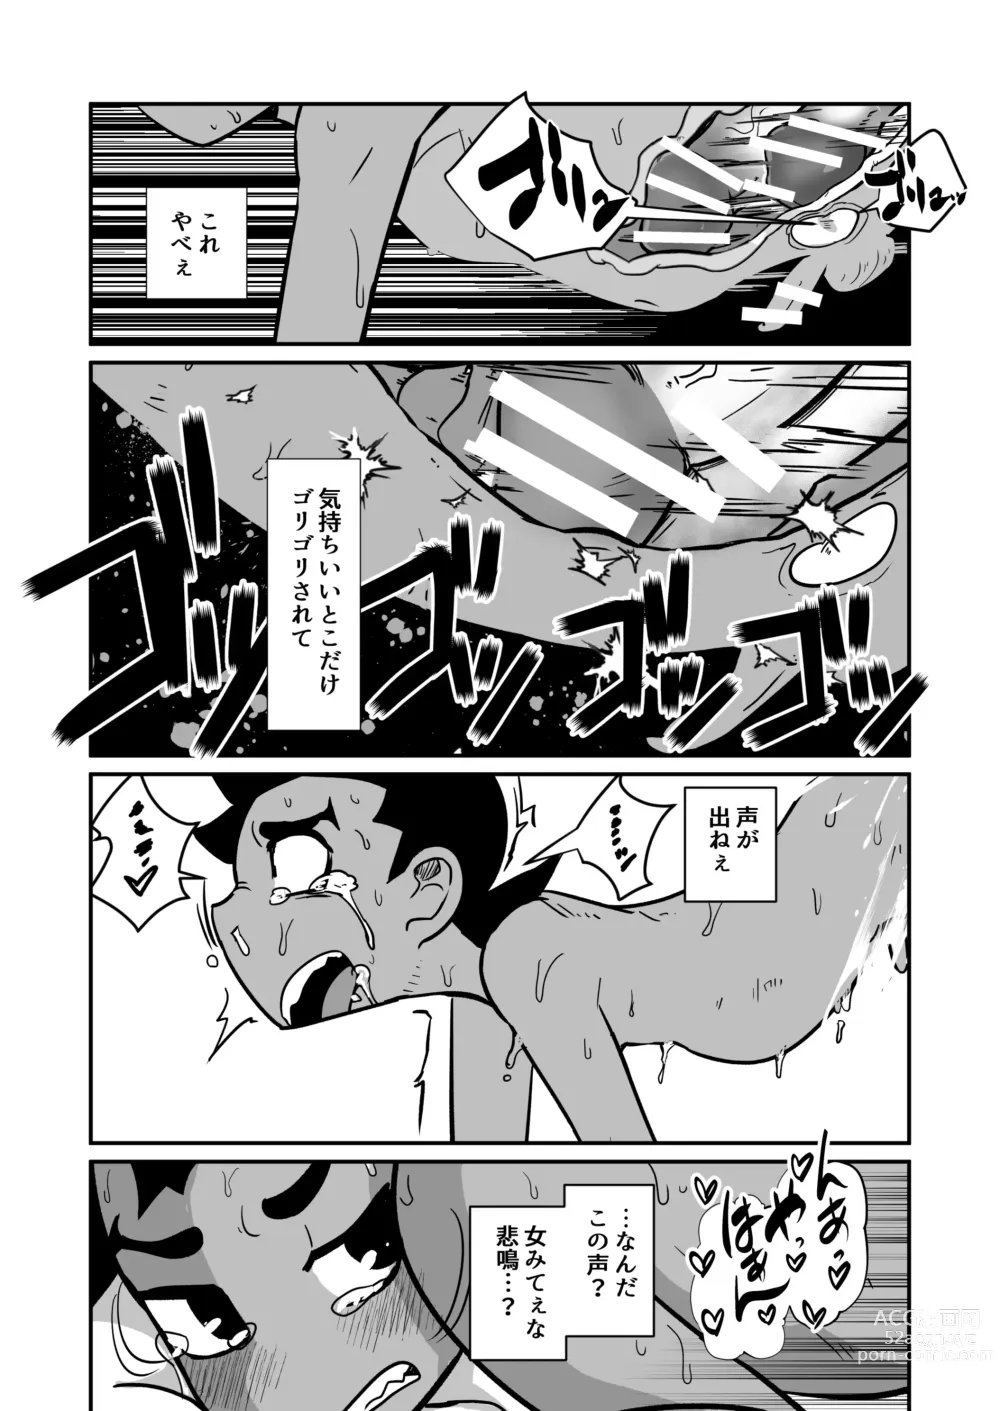 Page 65 of doujinshi Seiyoku no Hanashi.